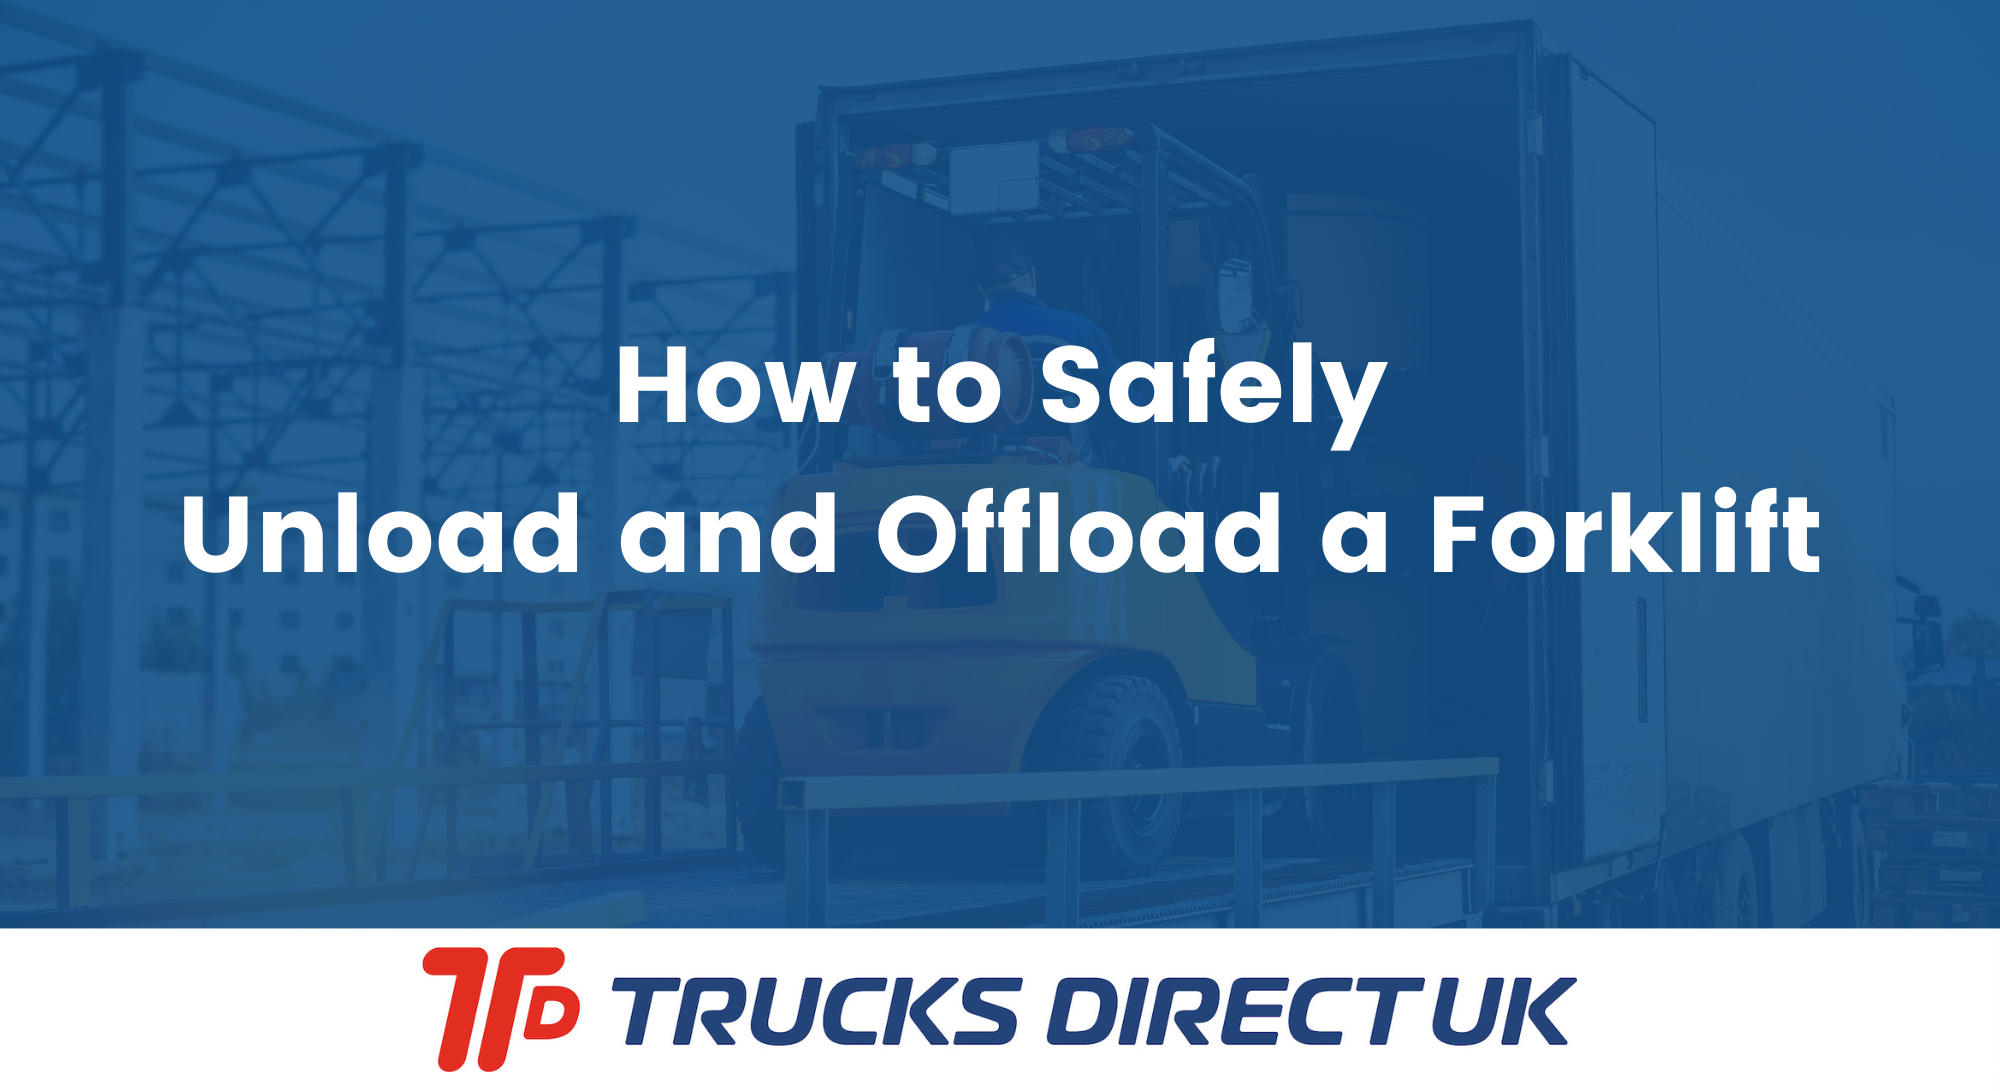 forklift-offloading-trucks-direct